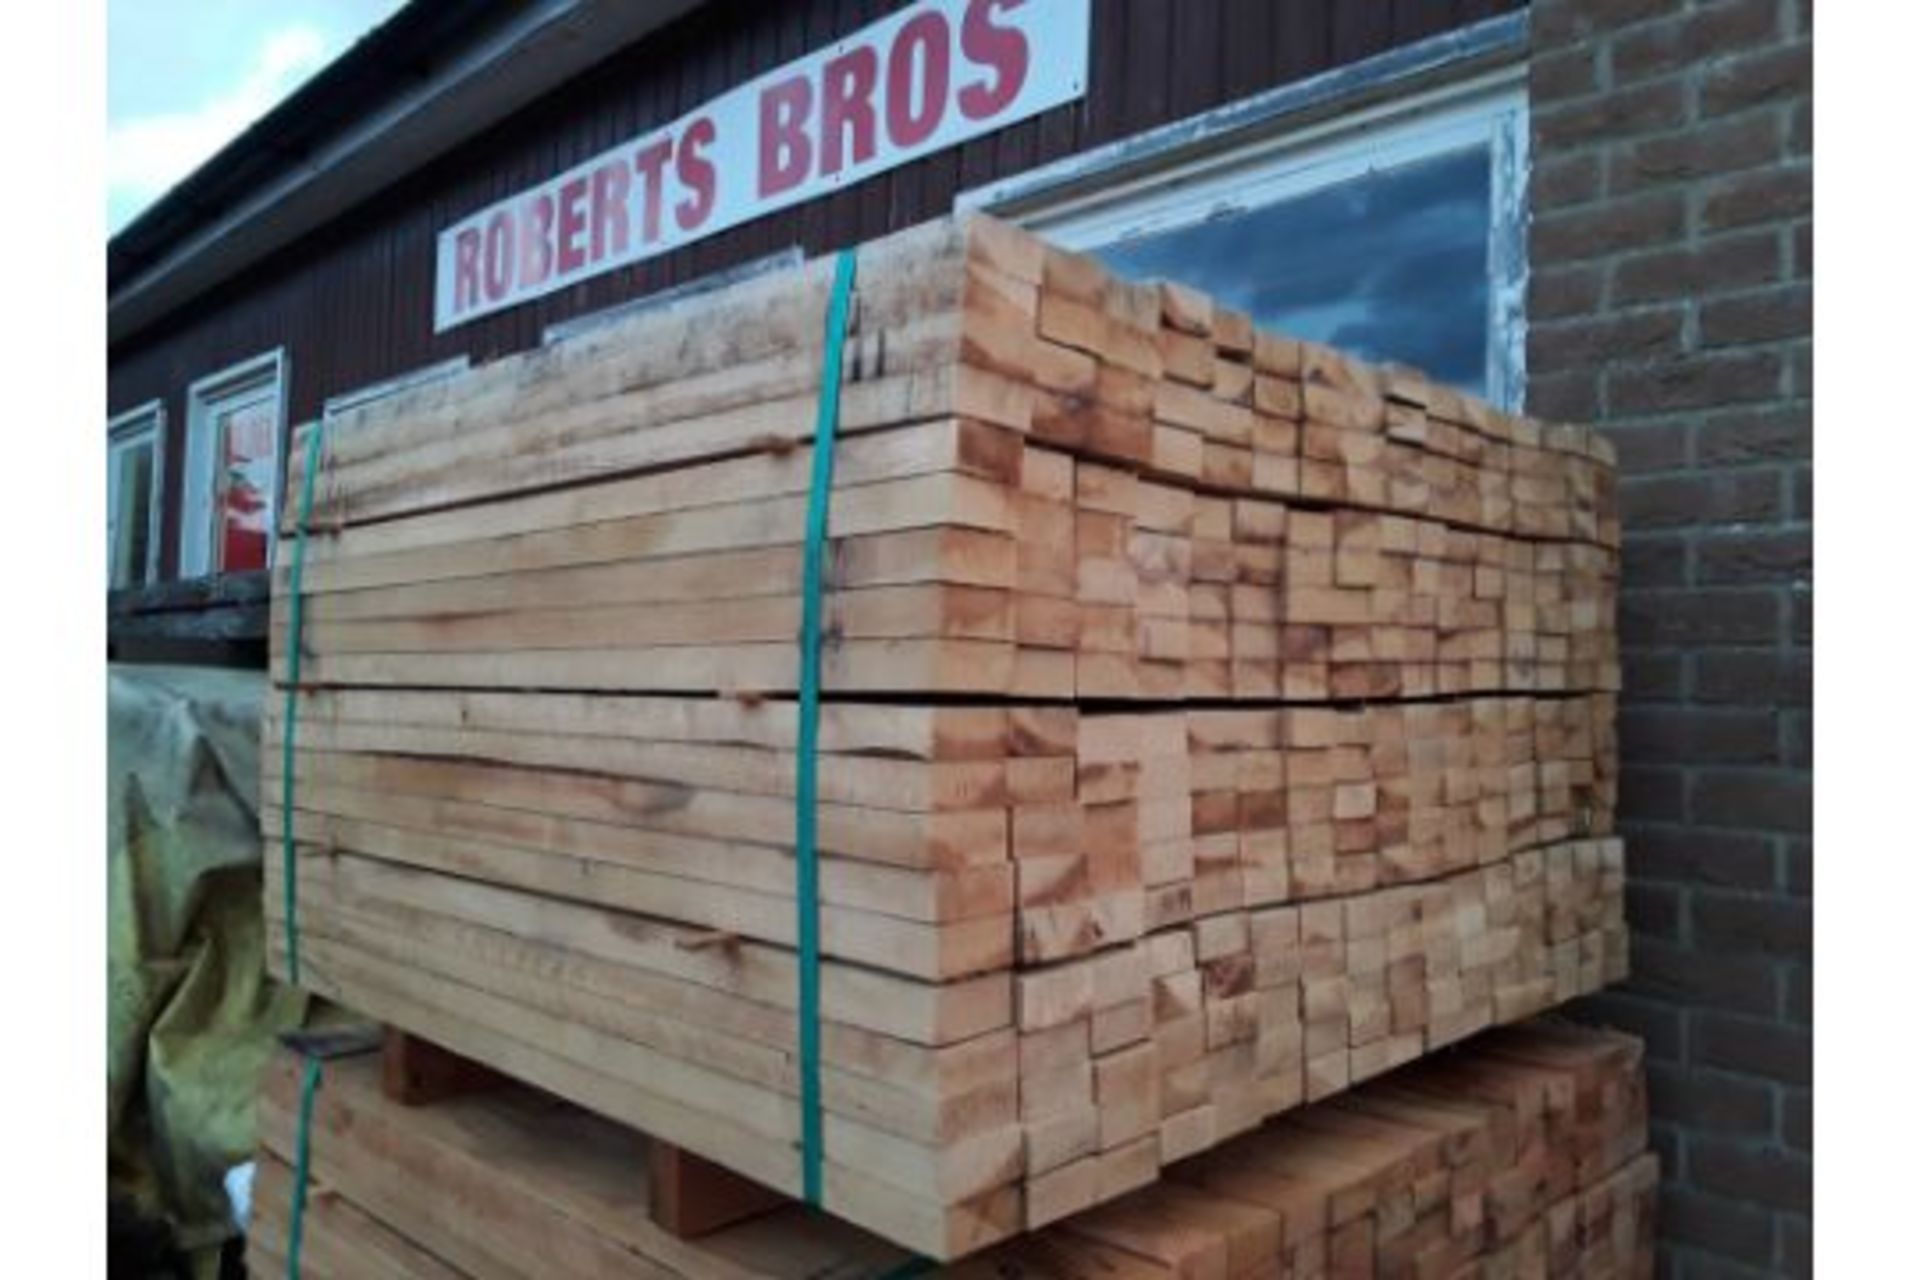 100x hardwood sawn unseasoned english oak palings / timber offcuts